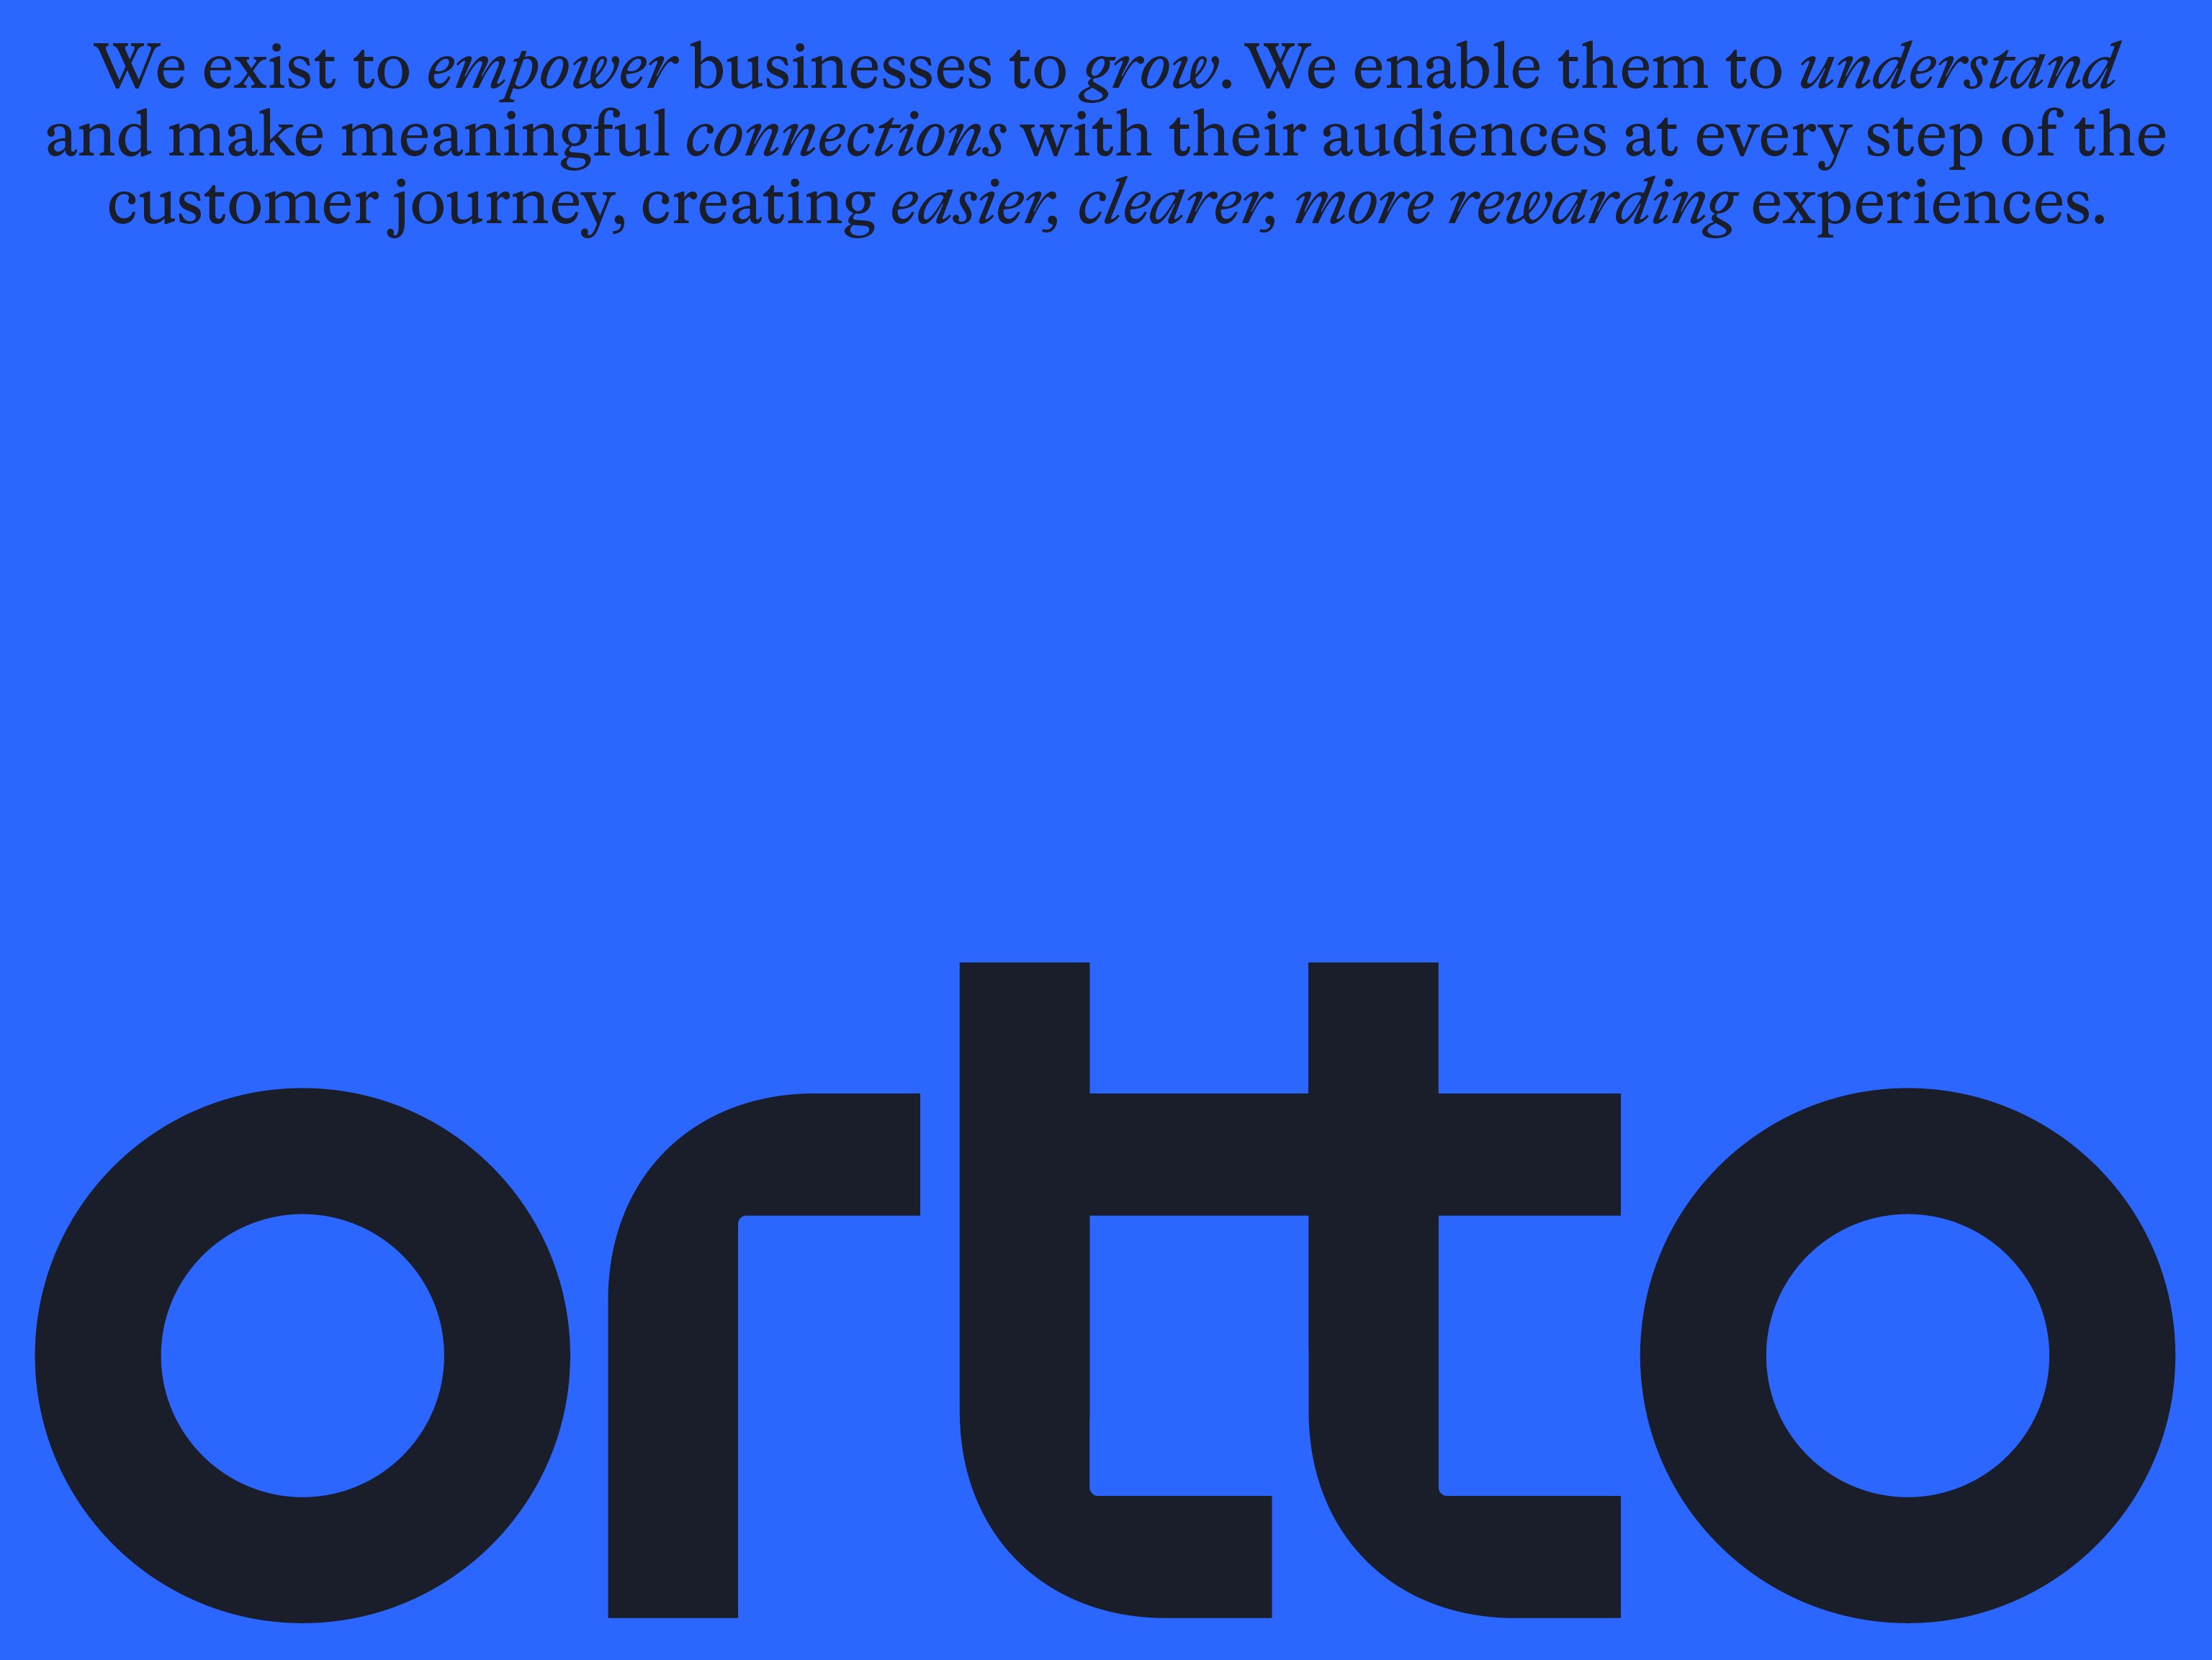 Logo voor automatisering, analyse en klantreisbedrijf Ortto, ontworpen door Christopher Doyle & Co